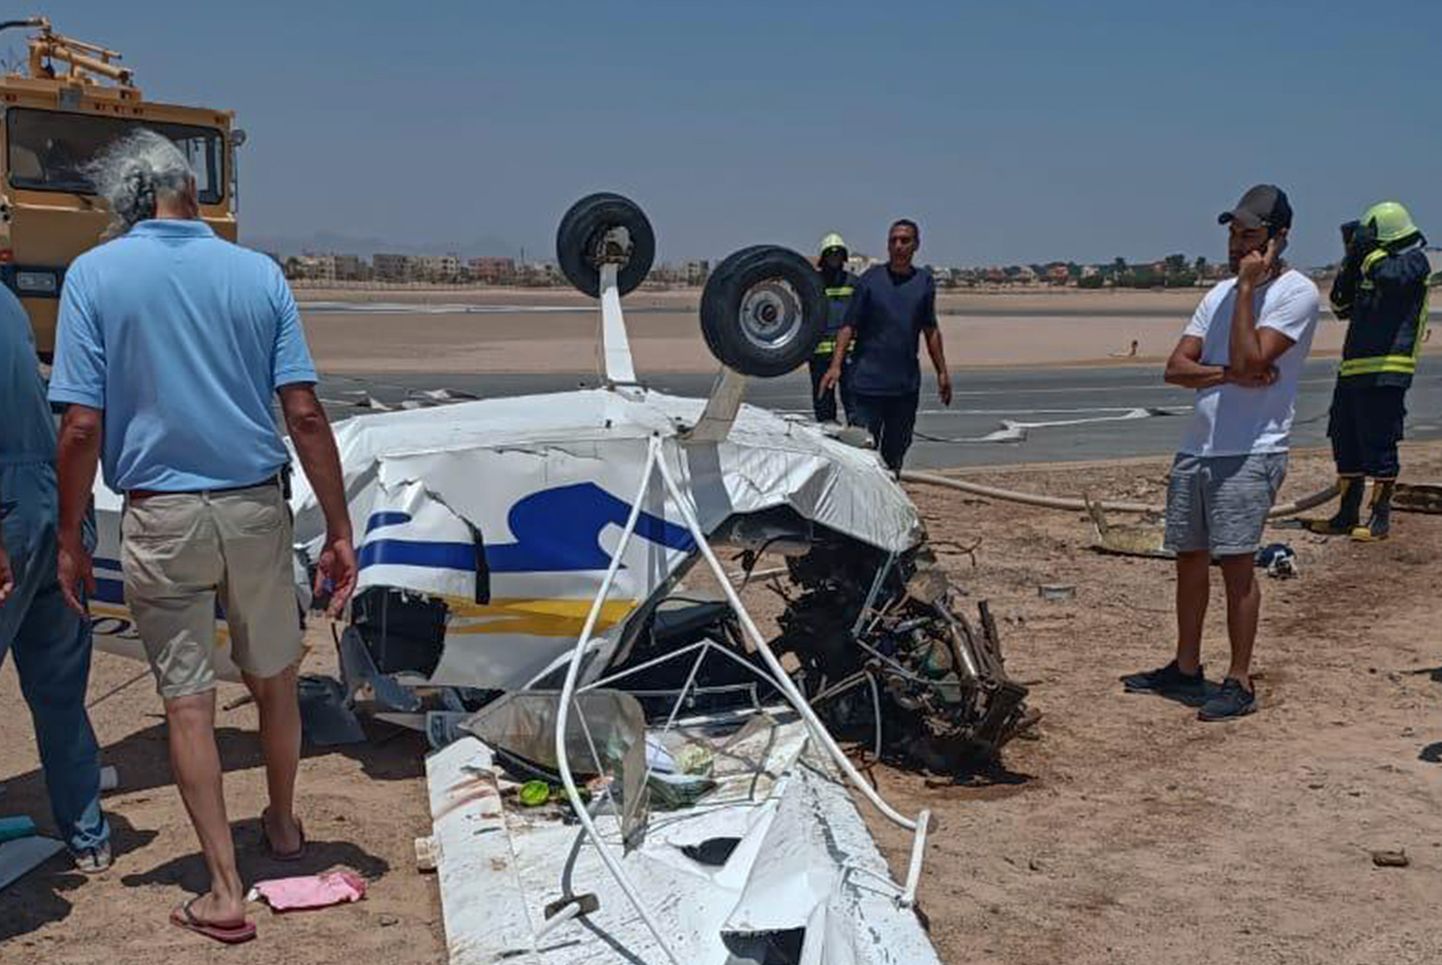 Egiptuse populaarse kuurordi Hurgada lähedal Gouna lennuväljal kukkus alla väikelennuk